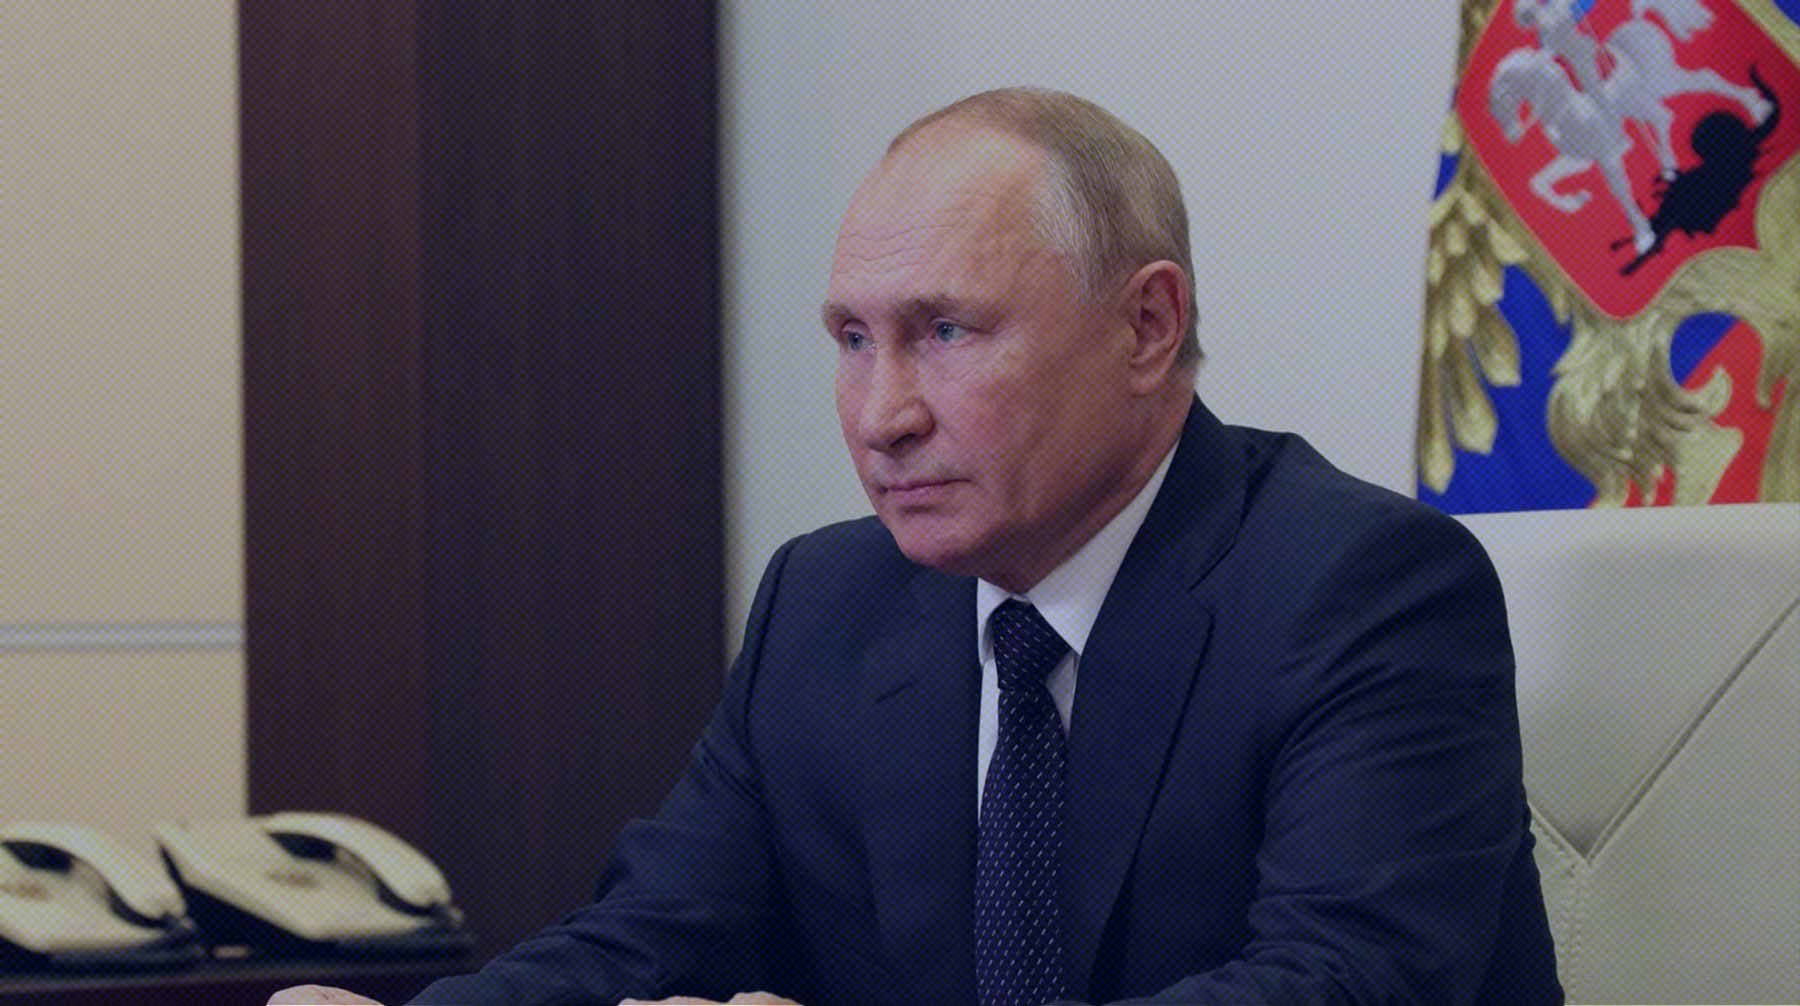 Пресс-секретарь президента Дмитрий Песков рассказал, что сейчас активно идут проверки Фото:  Global Look Press / Kremlin Pool